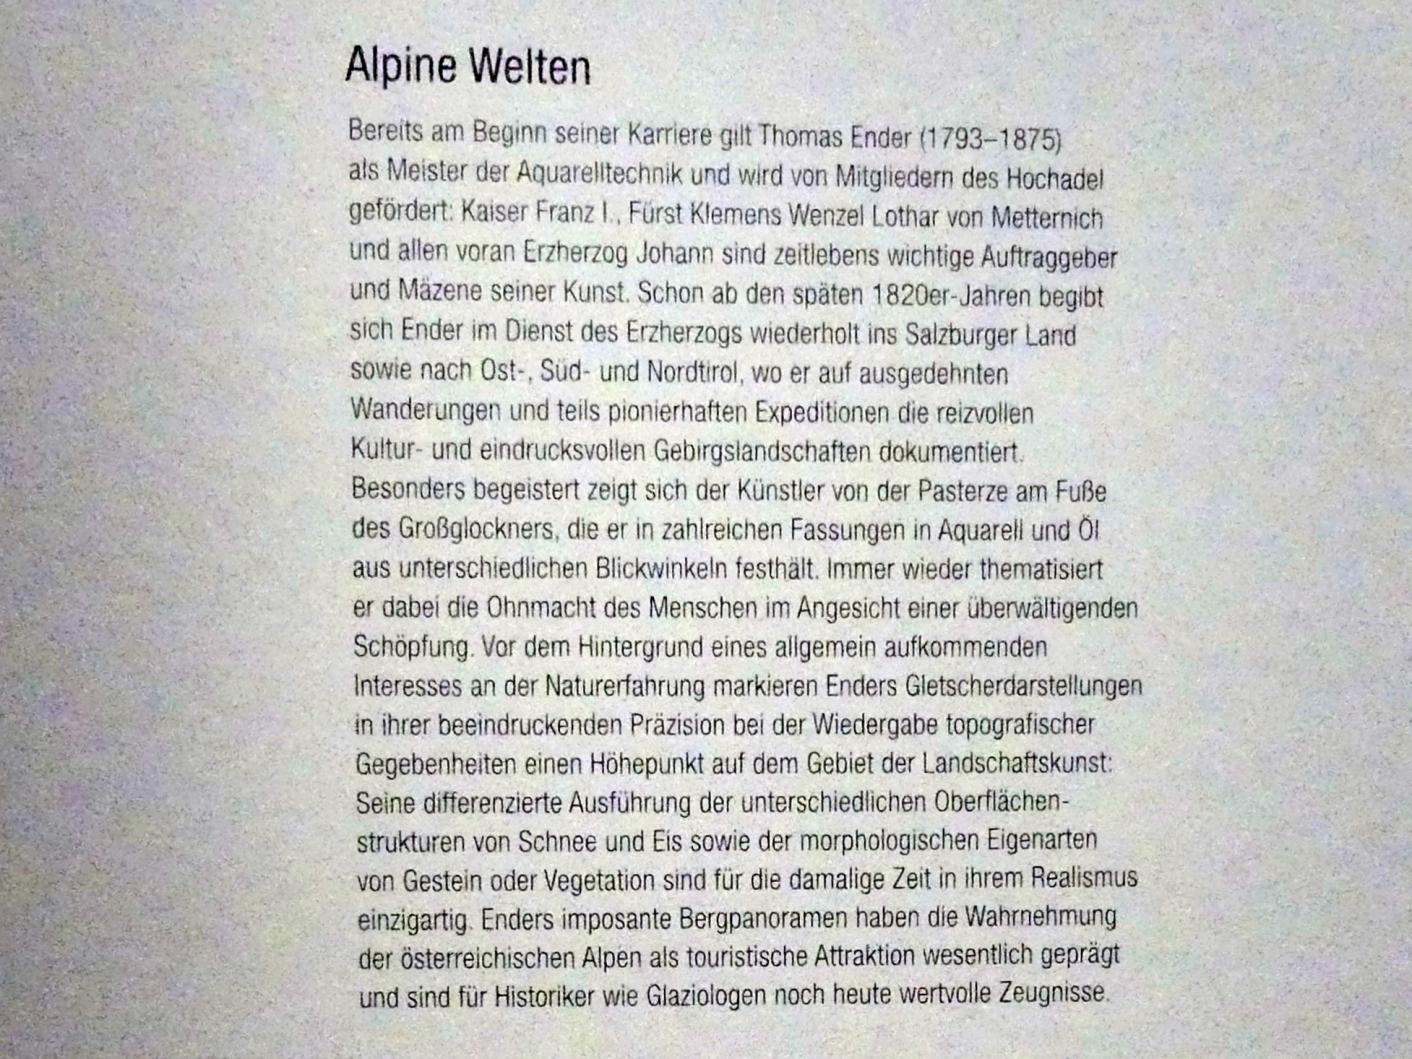 Wien, Albertina, Ausstellung "Rudolf von Alt und seine Zeit" vom 16.02.-10.06.2019, Alpine Welten, Bild 2/3